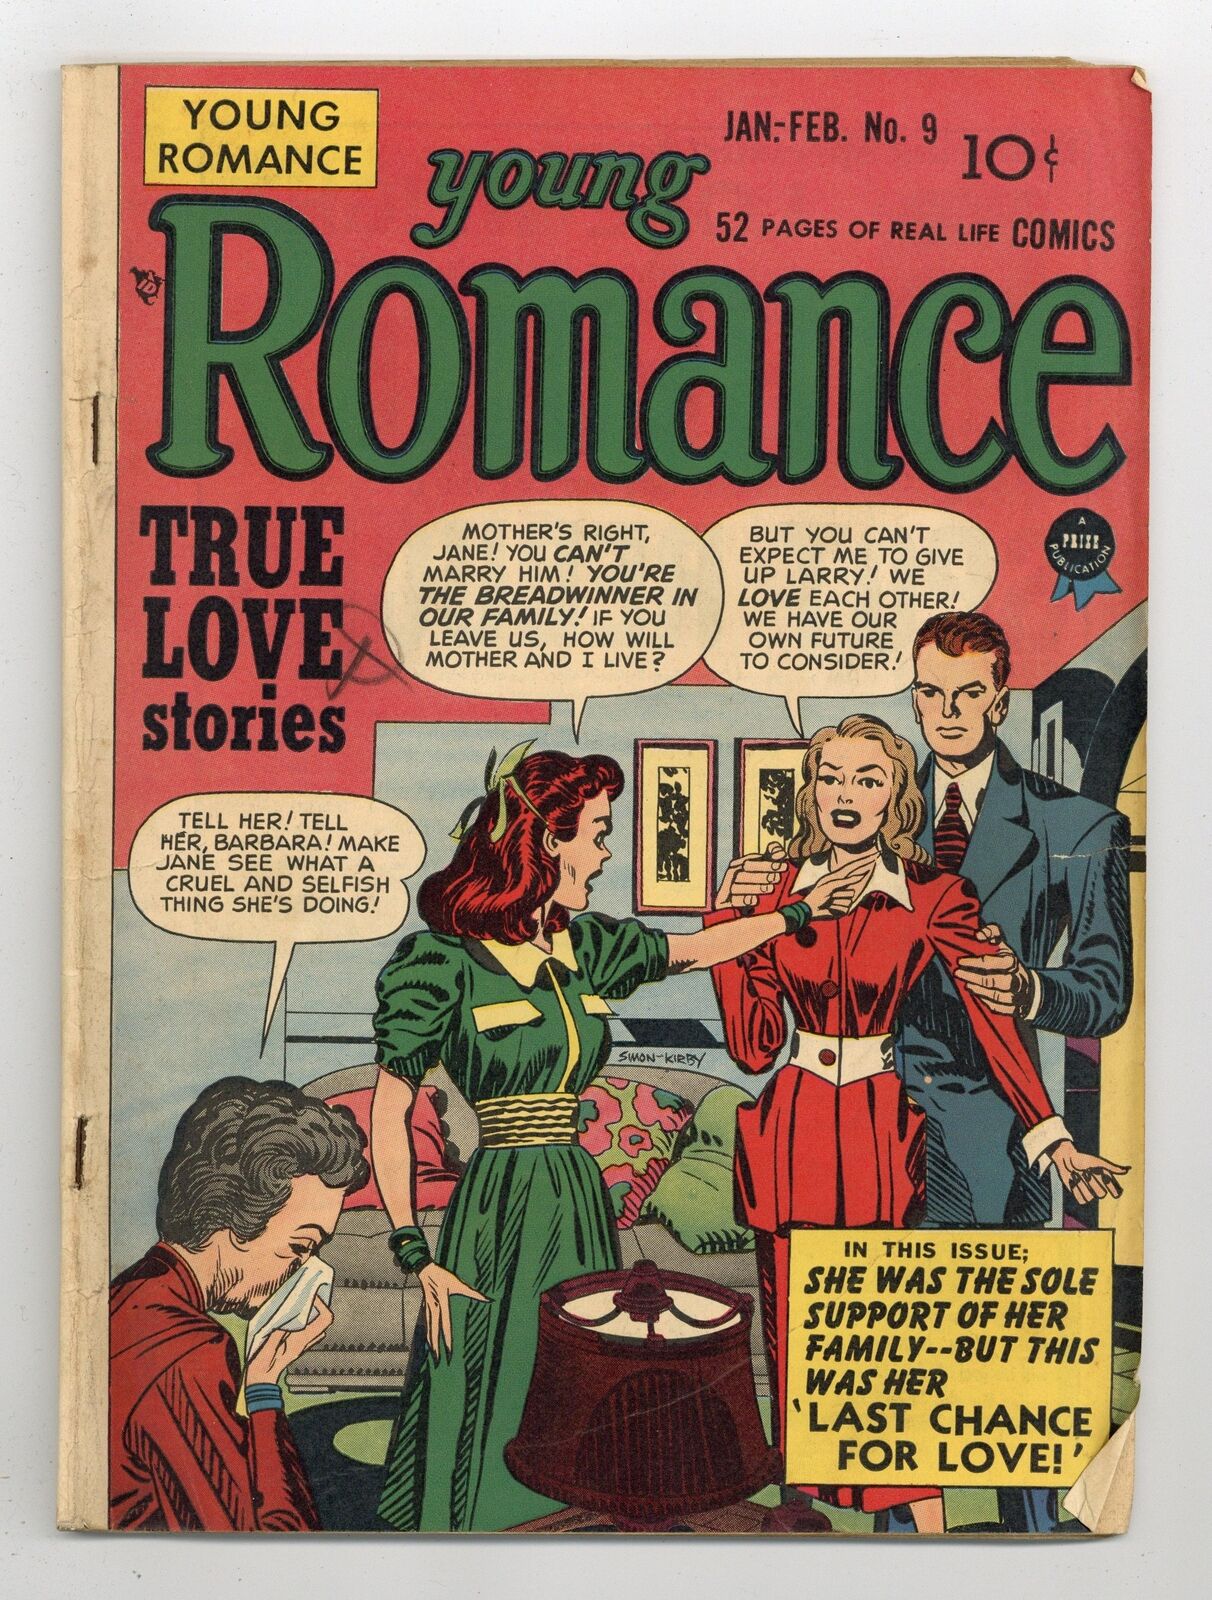 Young Romance Vol. 2 #3 (9) GD/VG 3.0 1949